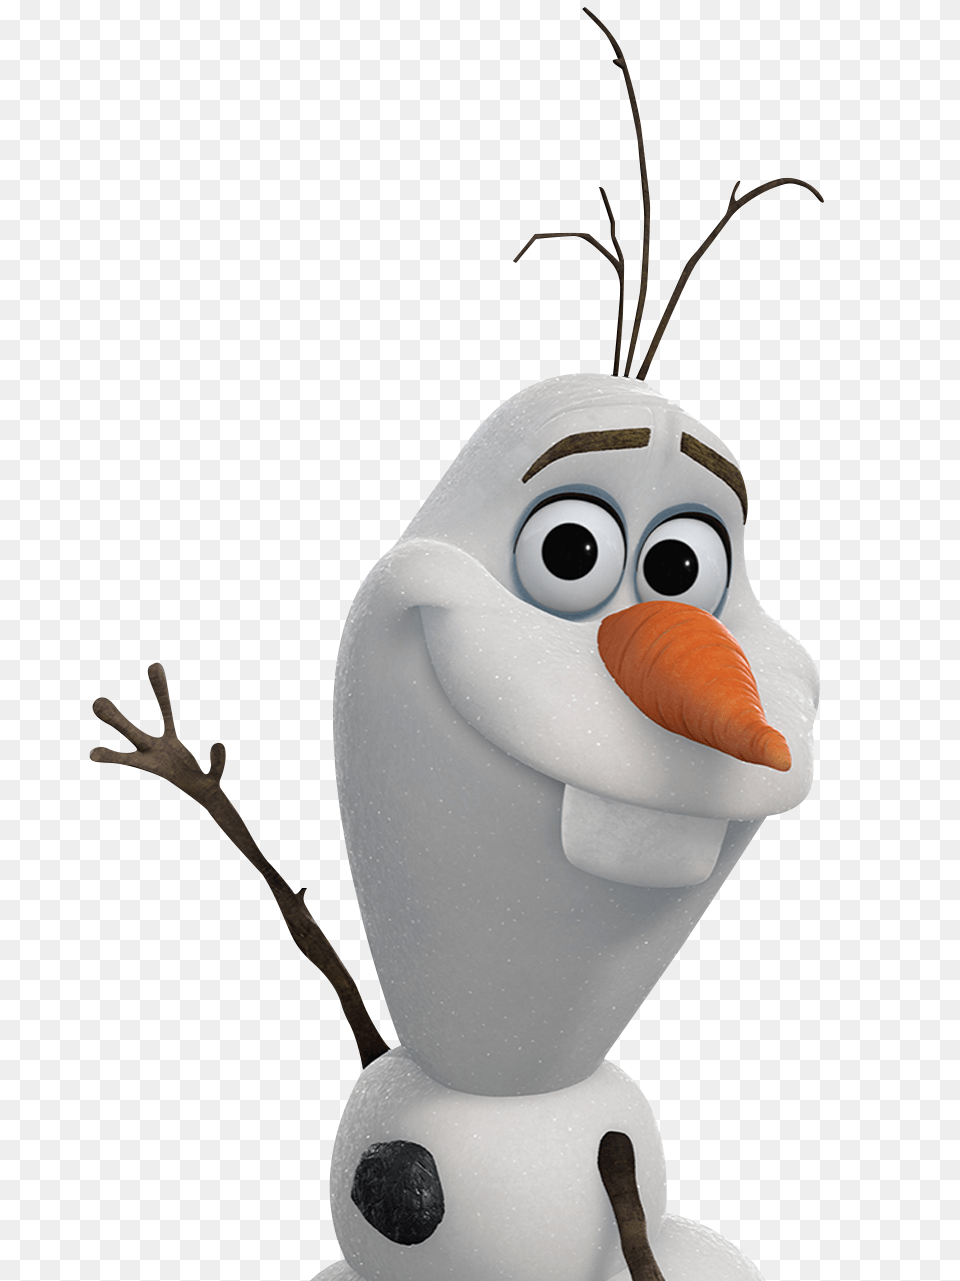 Frozen Disney Frozen Frozen Olaf Frozen, Carrot, Vegetable, Produce, Plant Png Image